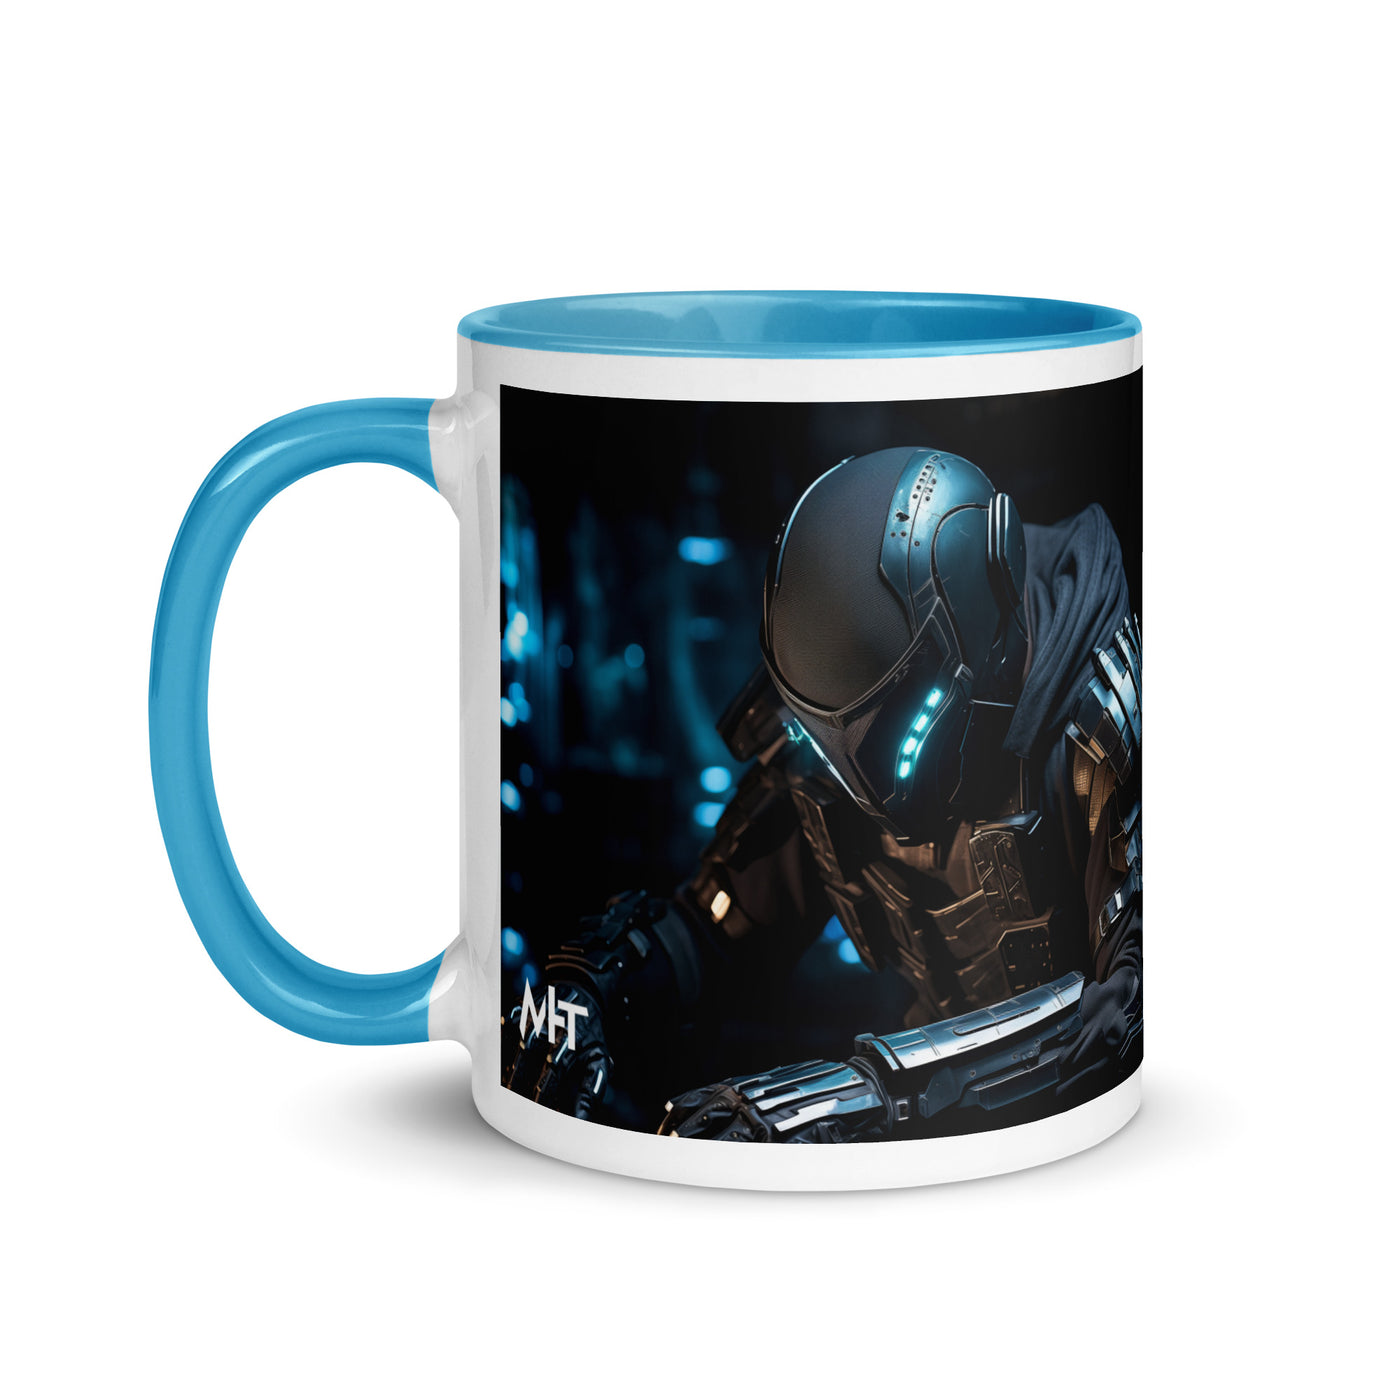 CyberArms Warrior v1 - Mug with Color Inside